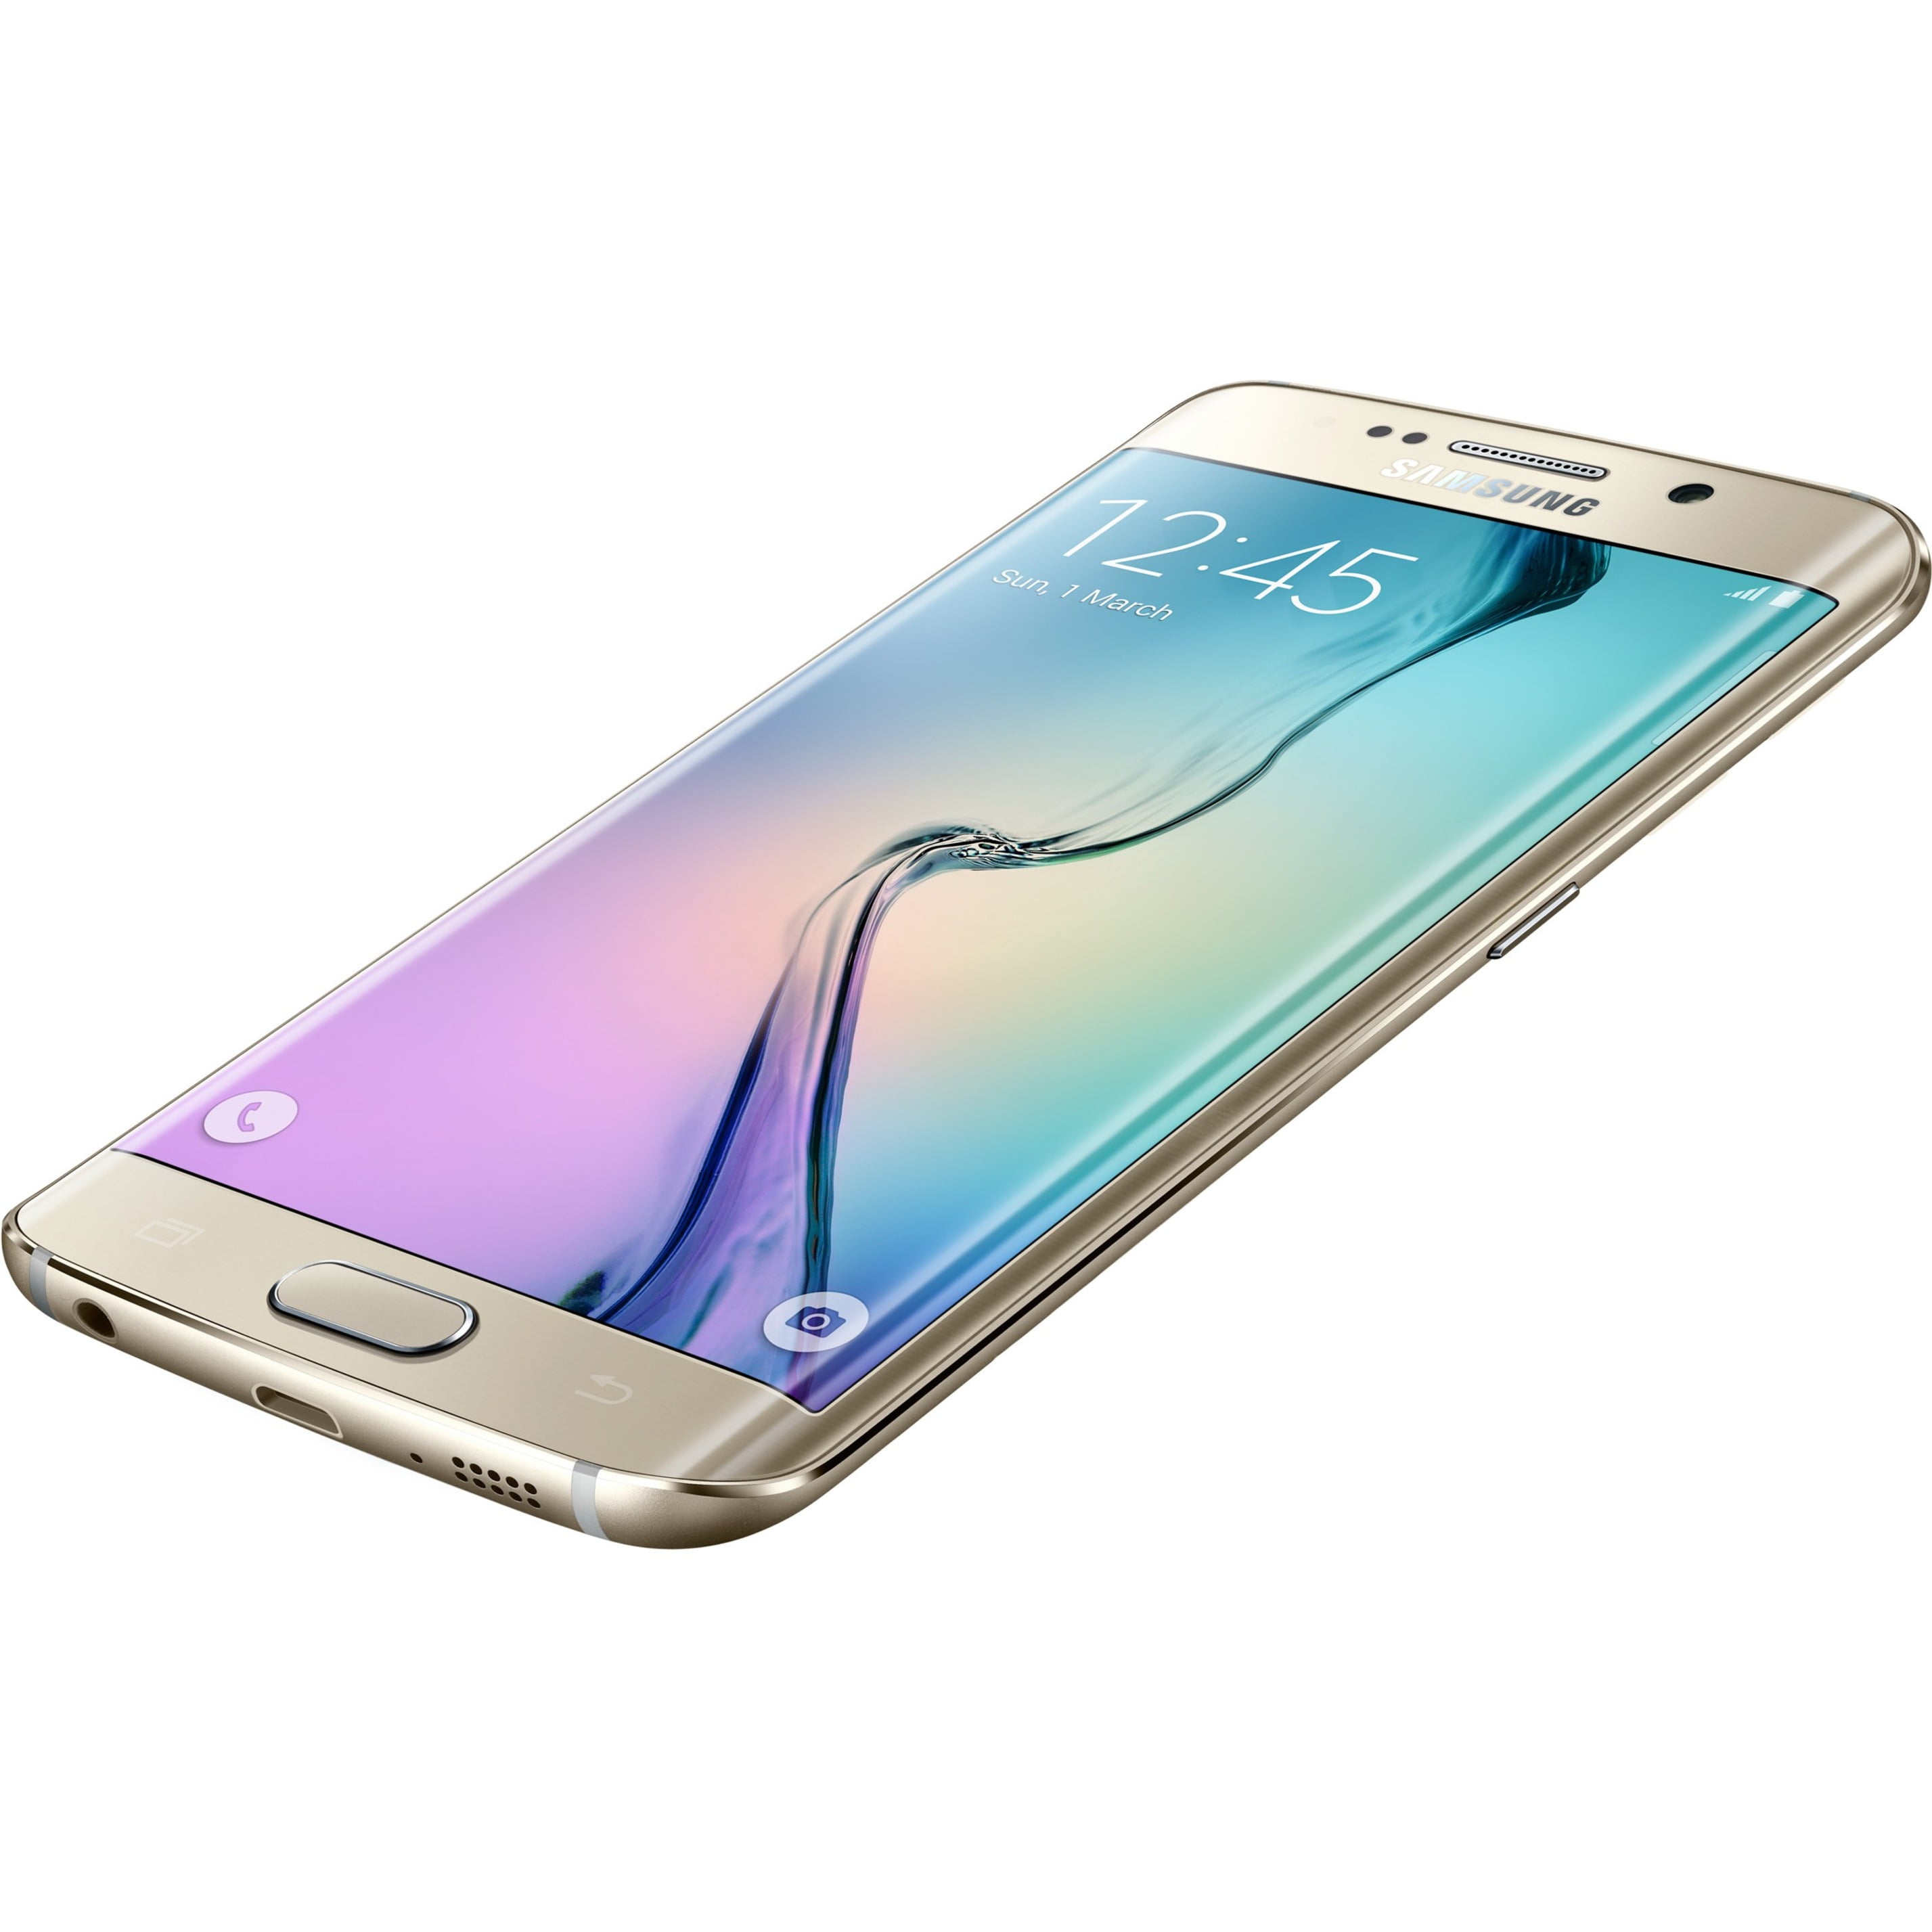 Samsung g925f Galaxy s6 Edge